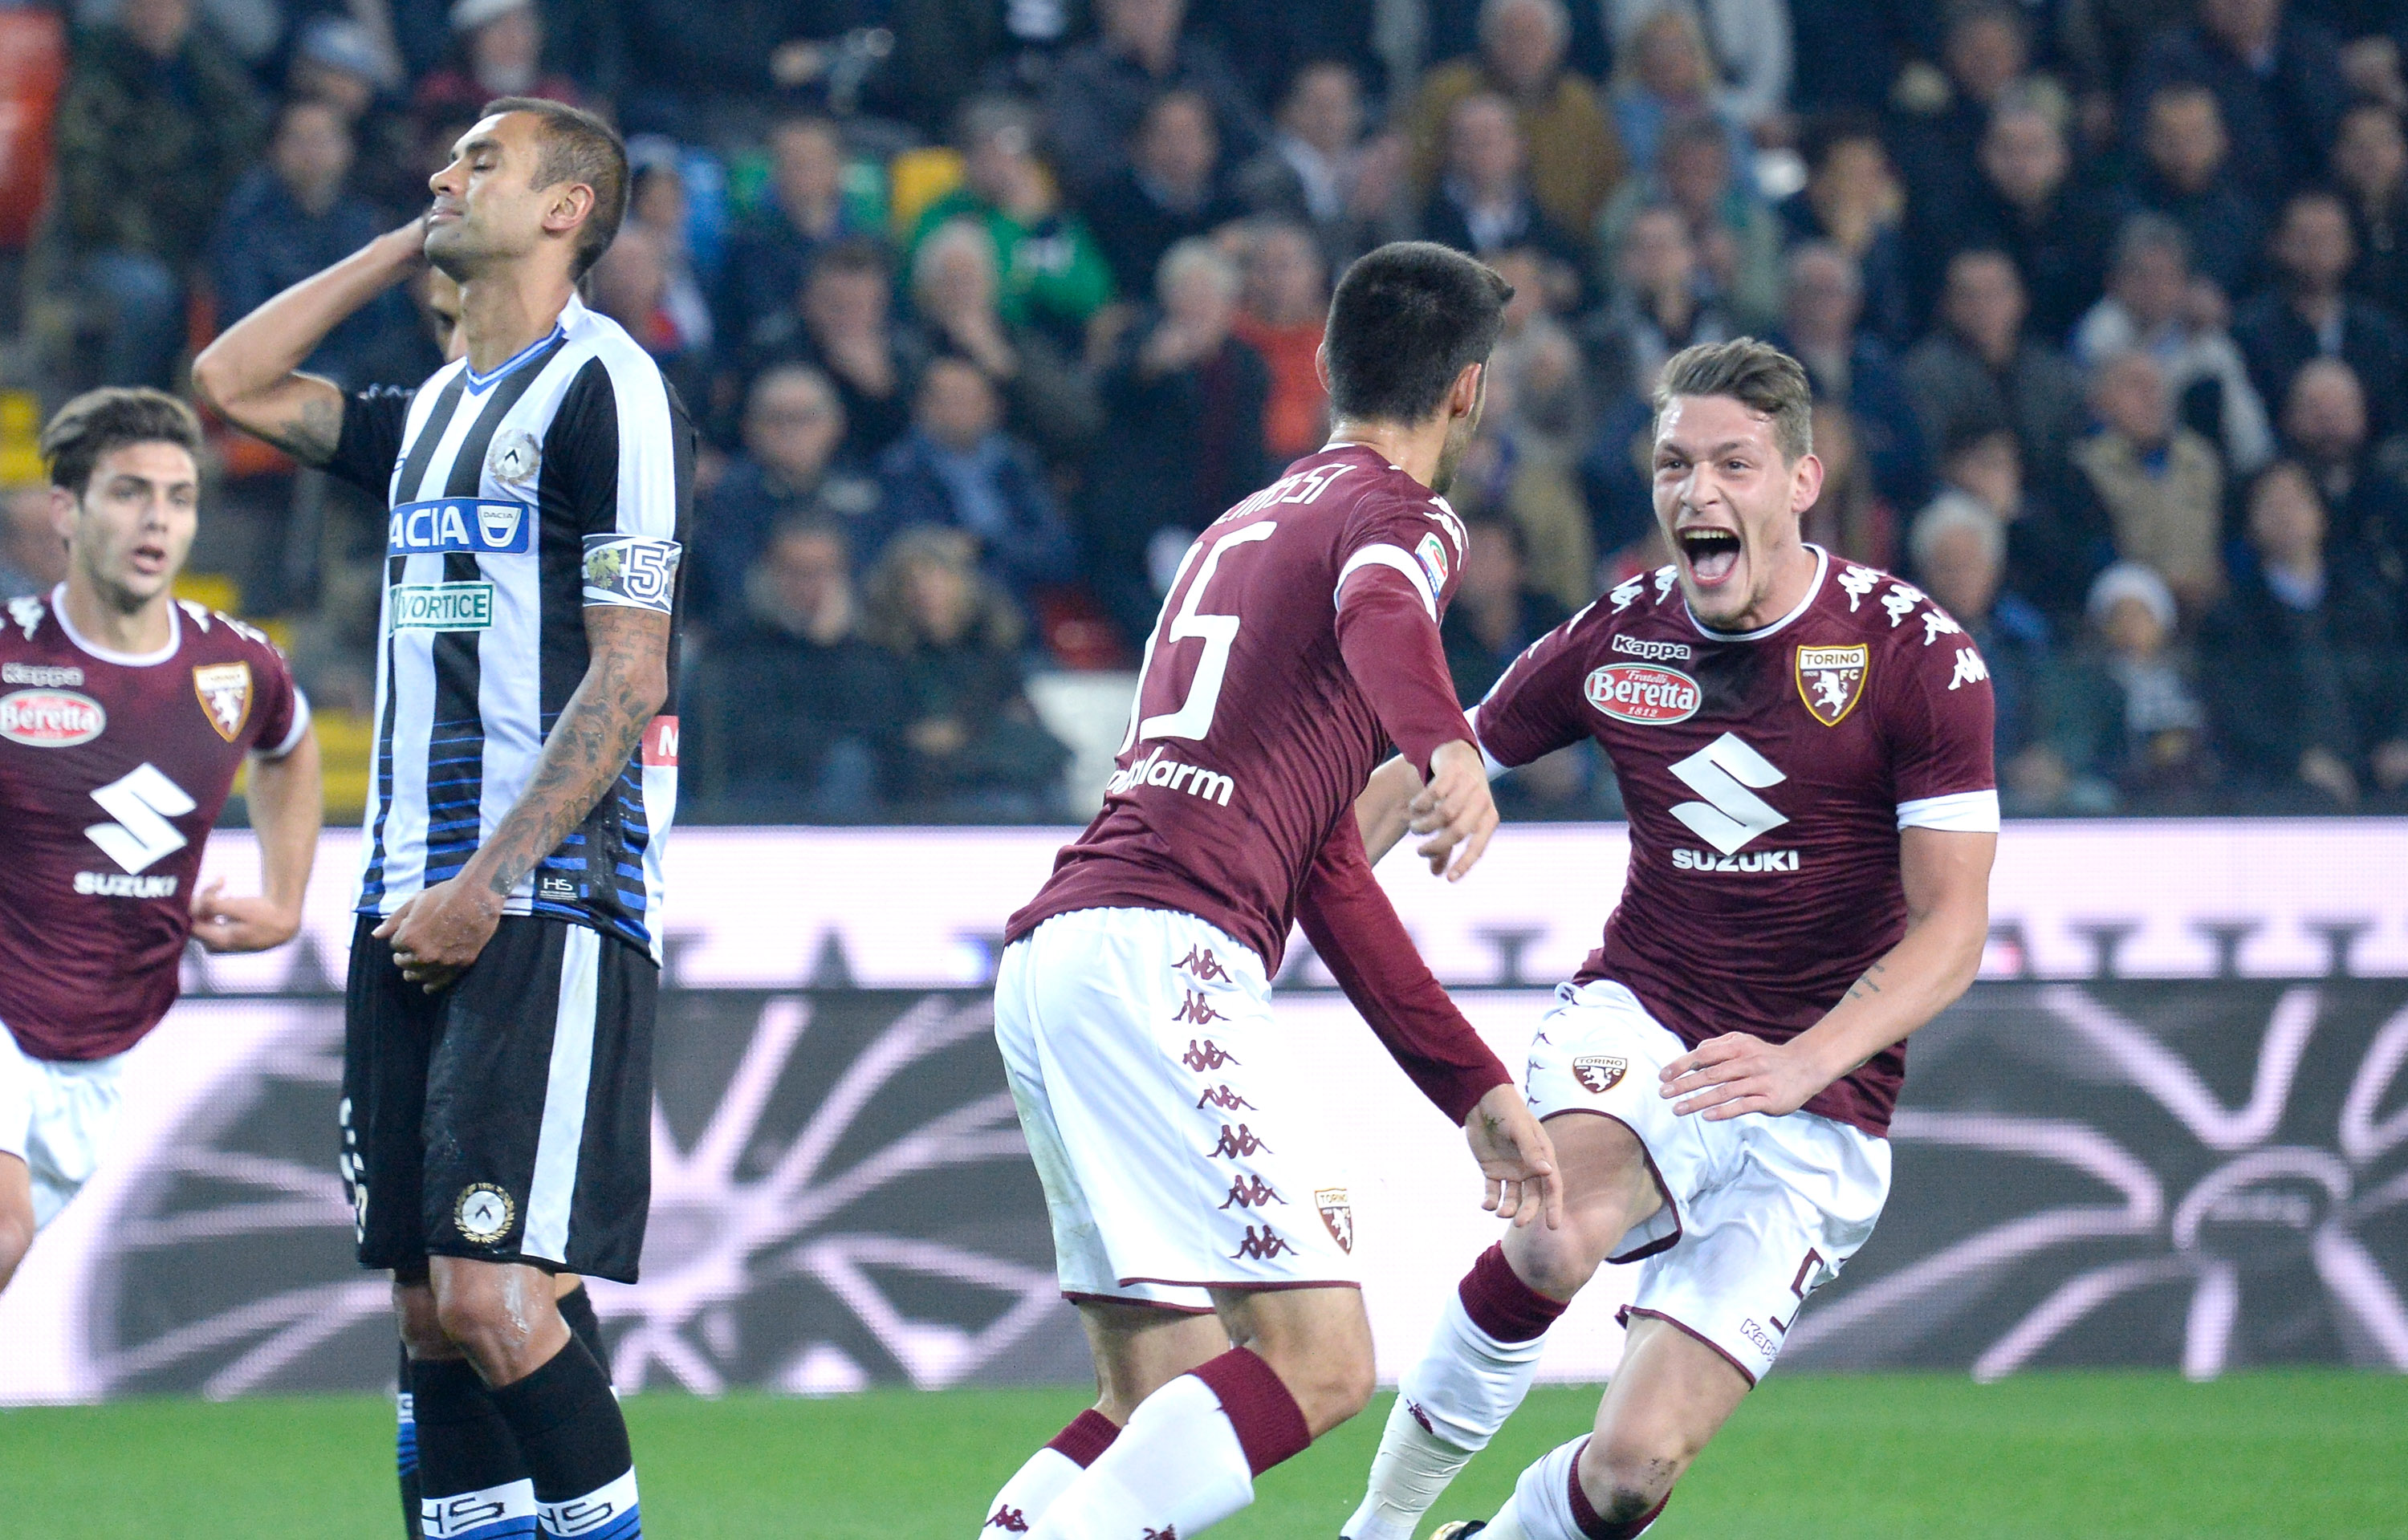 Belotti e Benassi (Torino) esultano per il gol di quest'ultimo nello scorso scontro diretto tra Udinese e Torino